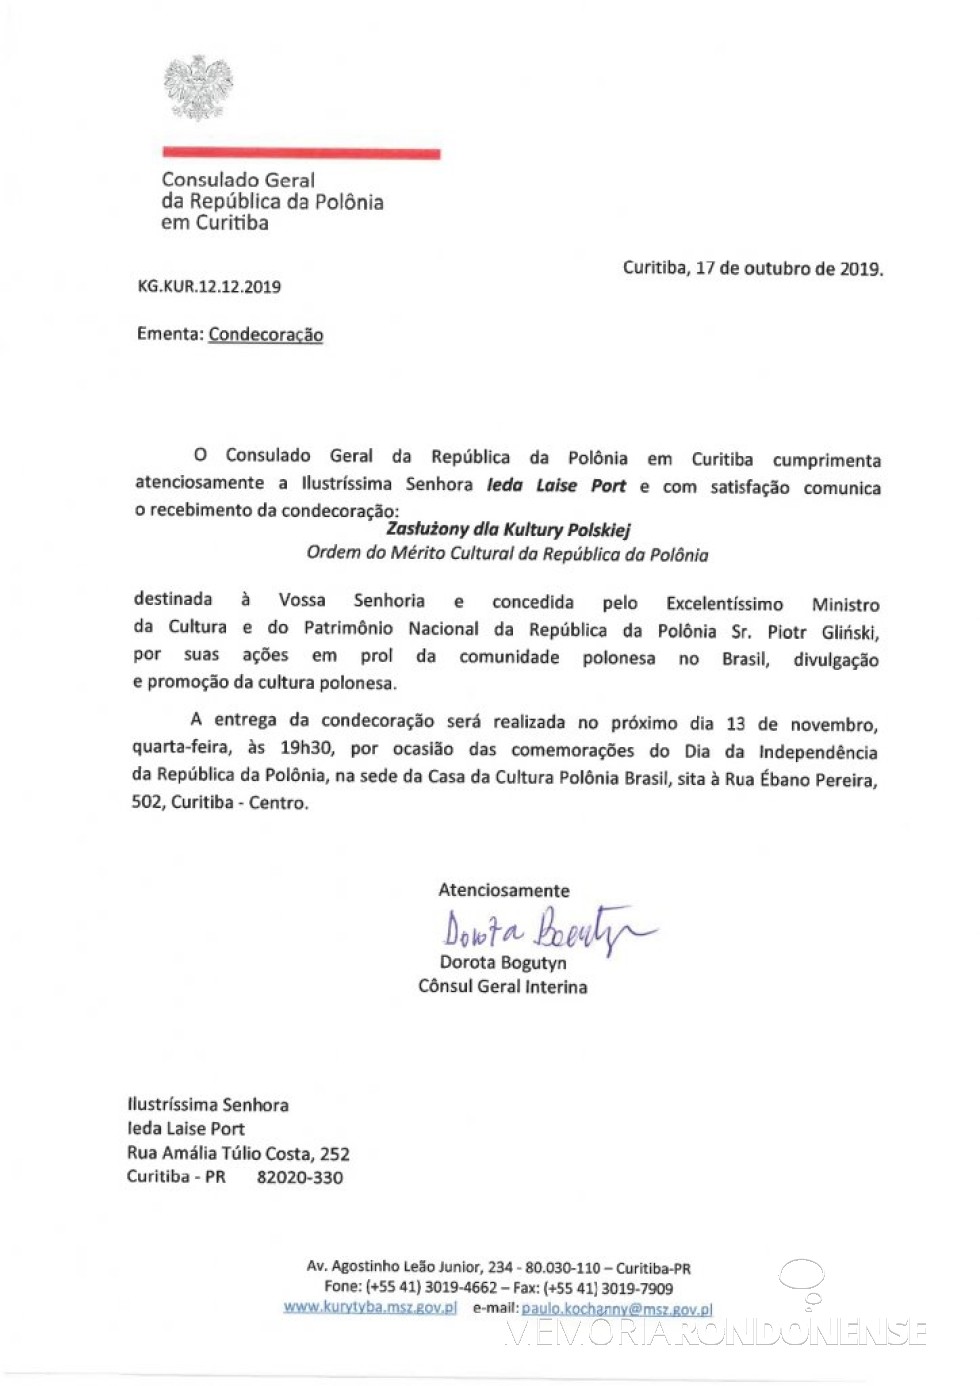 || Comunicado oficial do Consulado Polônia, em Curitiba,  para a rondonense Ieda Laise Port, sobre  a concessão da comenda do Mérito Cultural., em novembro de  2019.
Imagem: Acervo pessoal - FOTO  14 - 
